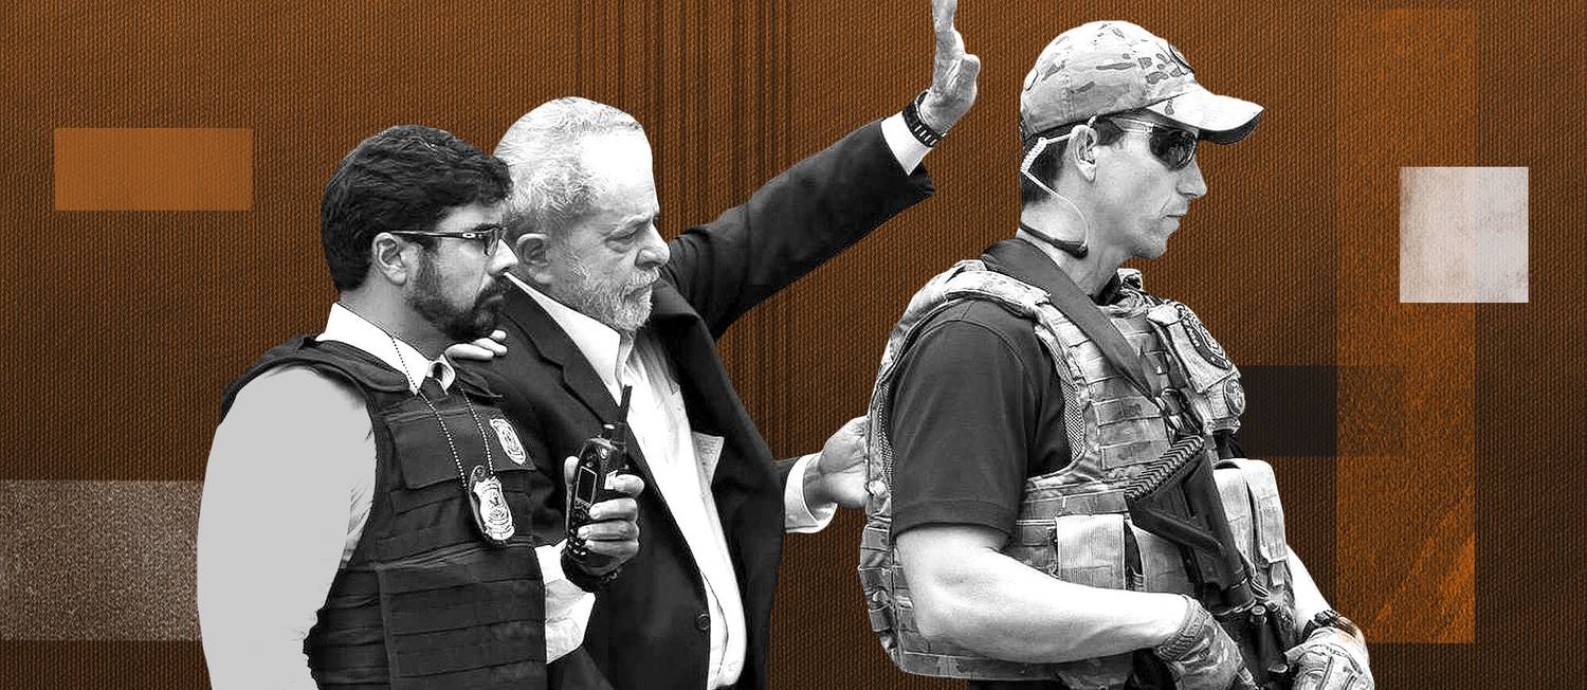 O ex-presidente Lula foi preso no dia 7 de abril de 2018 Foto: Arte/O Globo